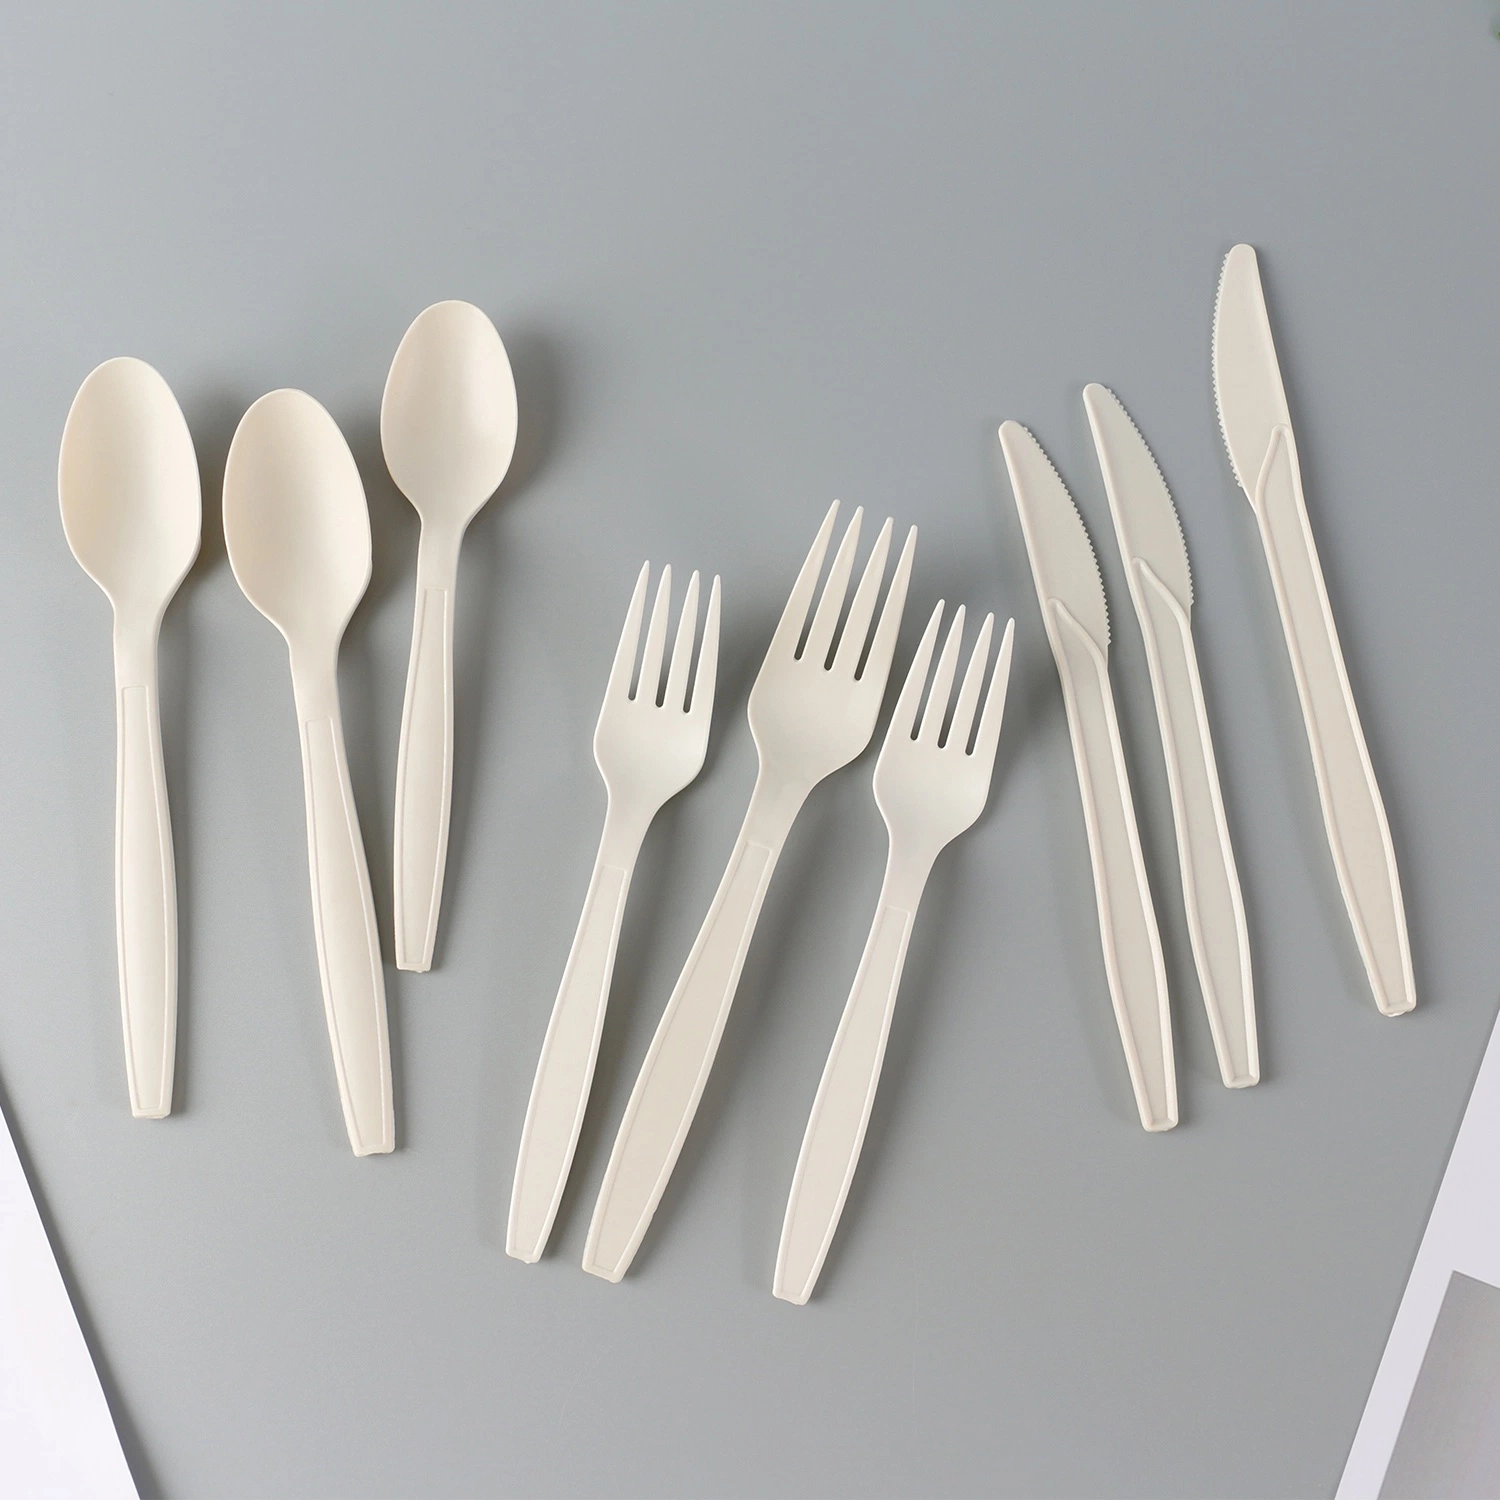 Биоразлагаемые посуда биоразлагаемых одноразовых столовых приборов продуктов пластиковые PLA ложку вилку и нож столовые приборы